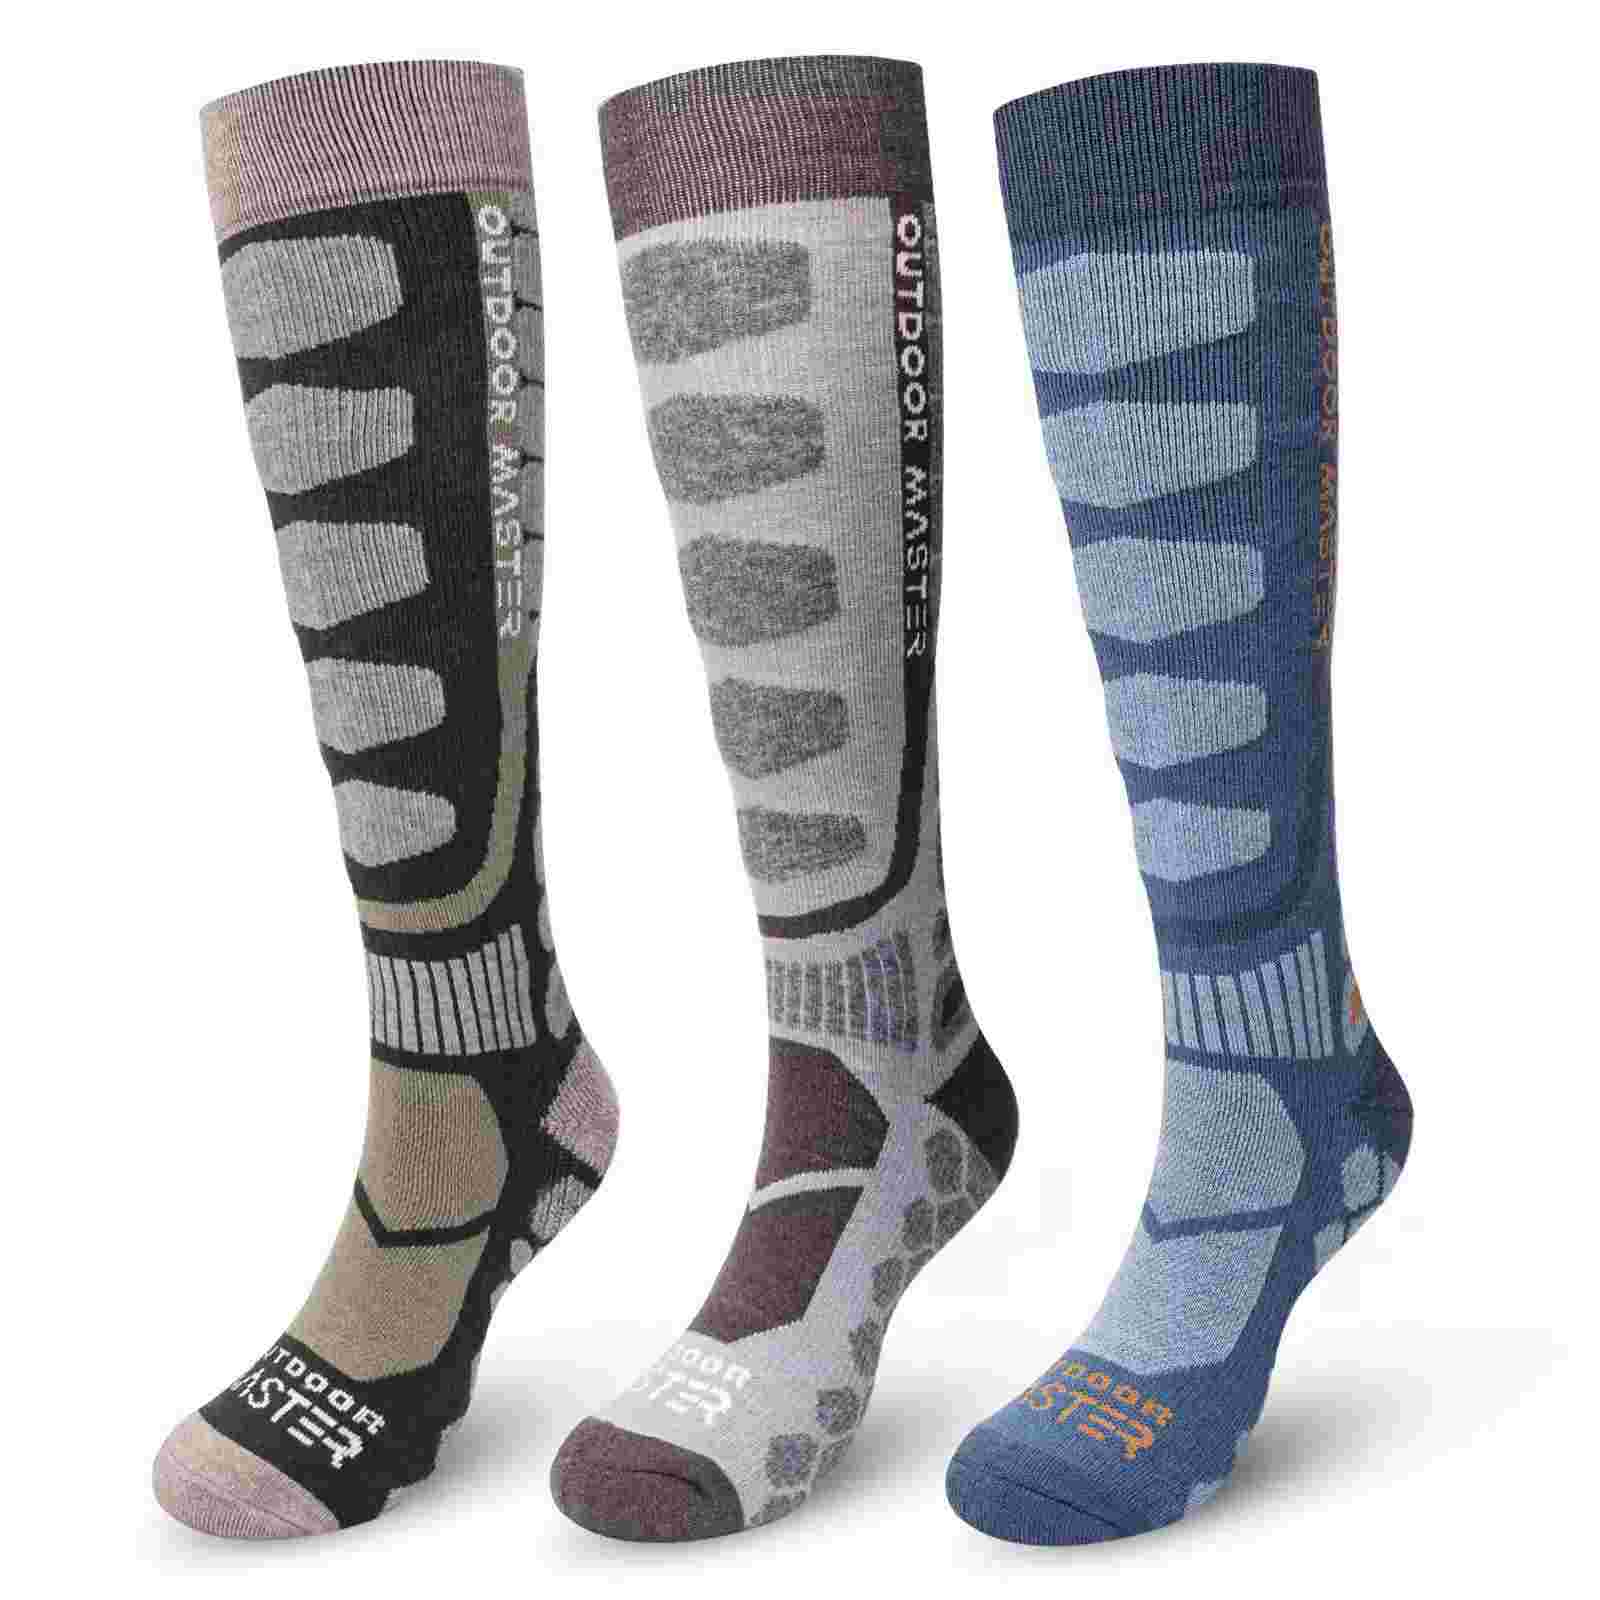 Merino Wool Ski Socks 2/3 Pairs